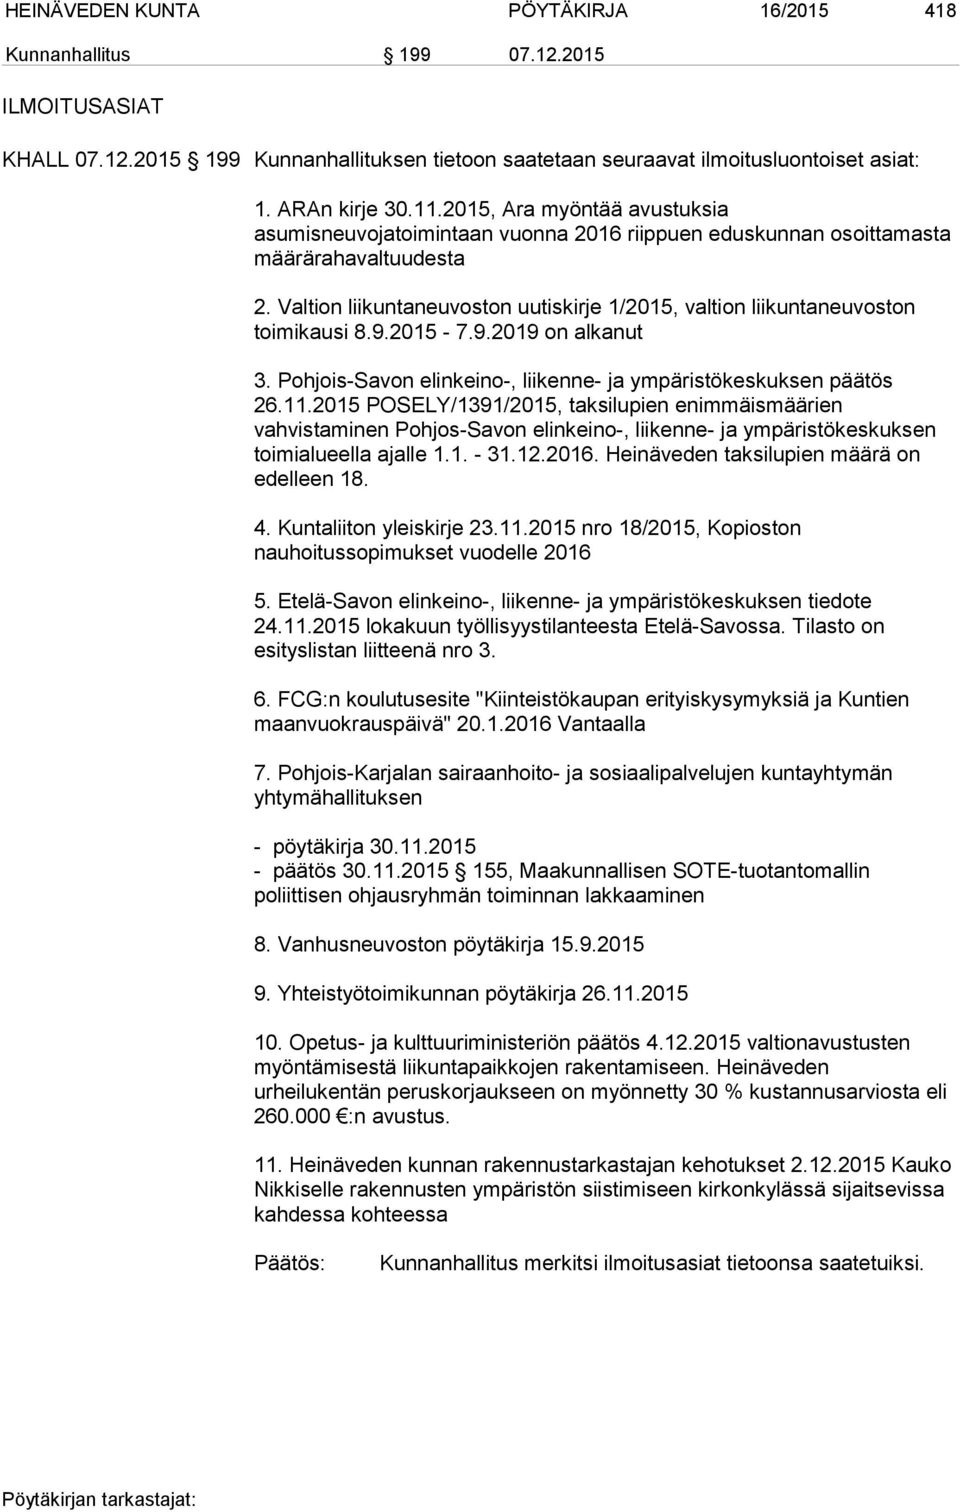 Valtion liikuntaneuvoston uutiskirje 1/2015, valtion liikuntaneuvoston toimikausi 8.9.2015-7.9.2019 on alkanut 3. Pohjois-Savon elinkeino-, liikenne- ja ympäristökeskuksen päätös 26.11.